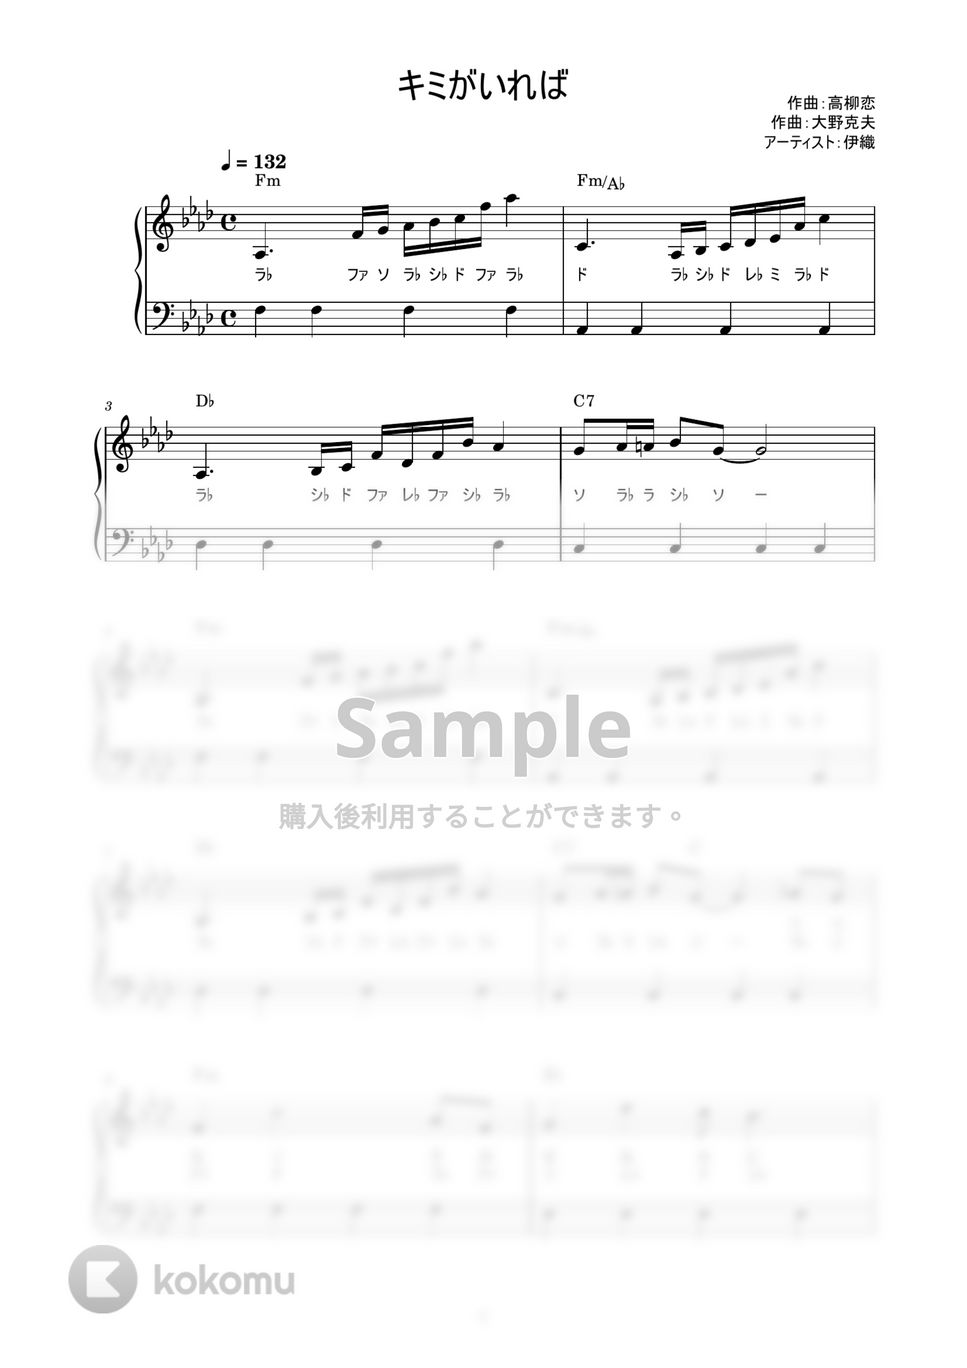 伊織 - キミがいれば (かんたん / 歌詞付き / ドレミ付き / 初心者) by piano.tokyo